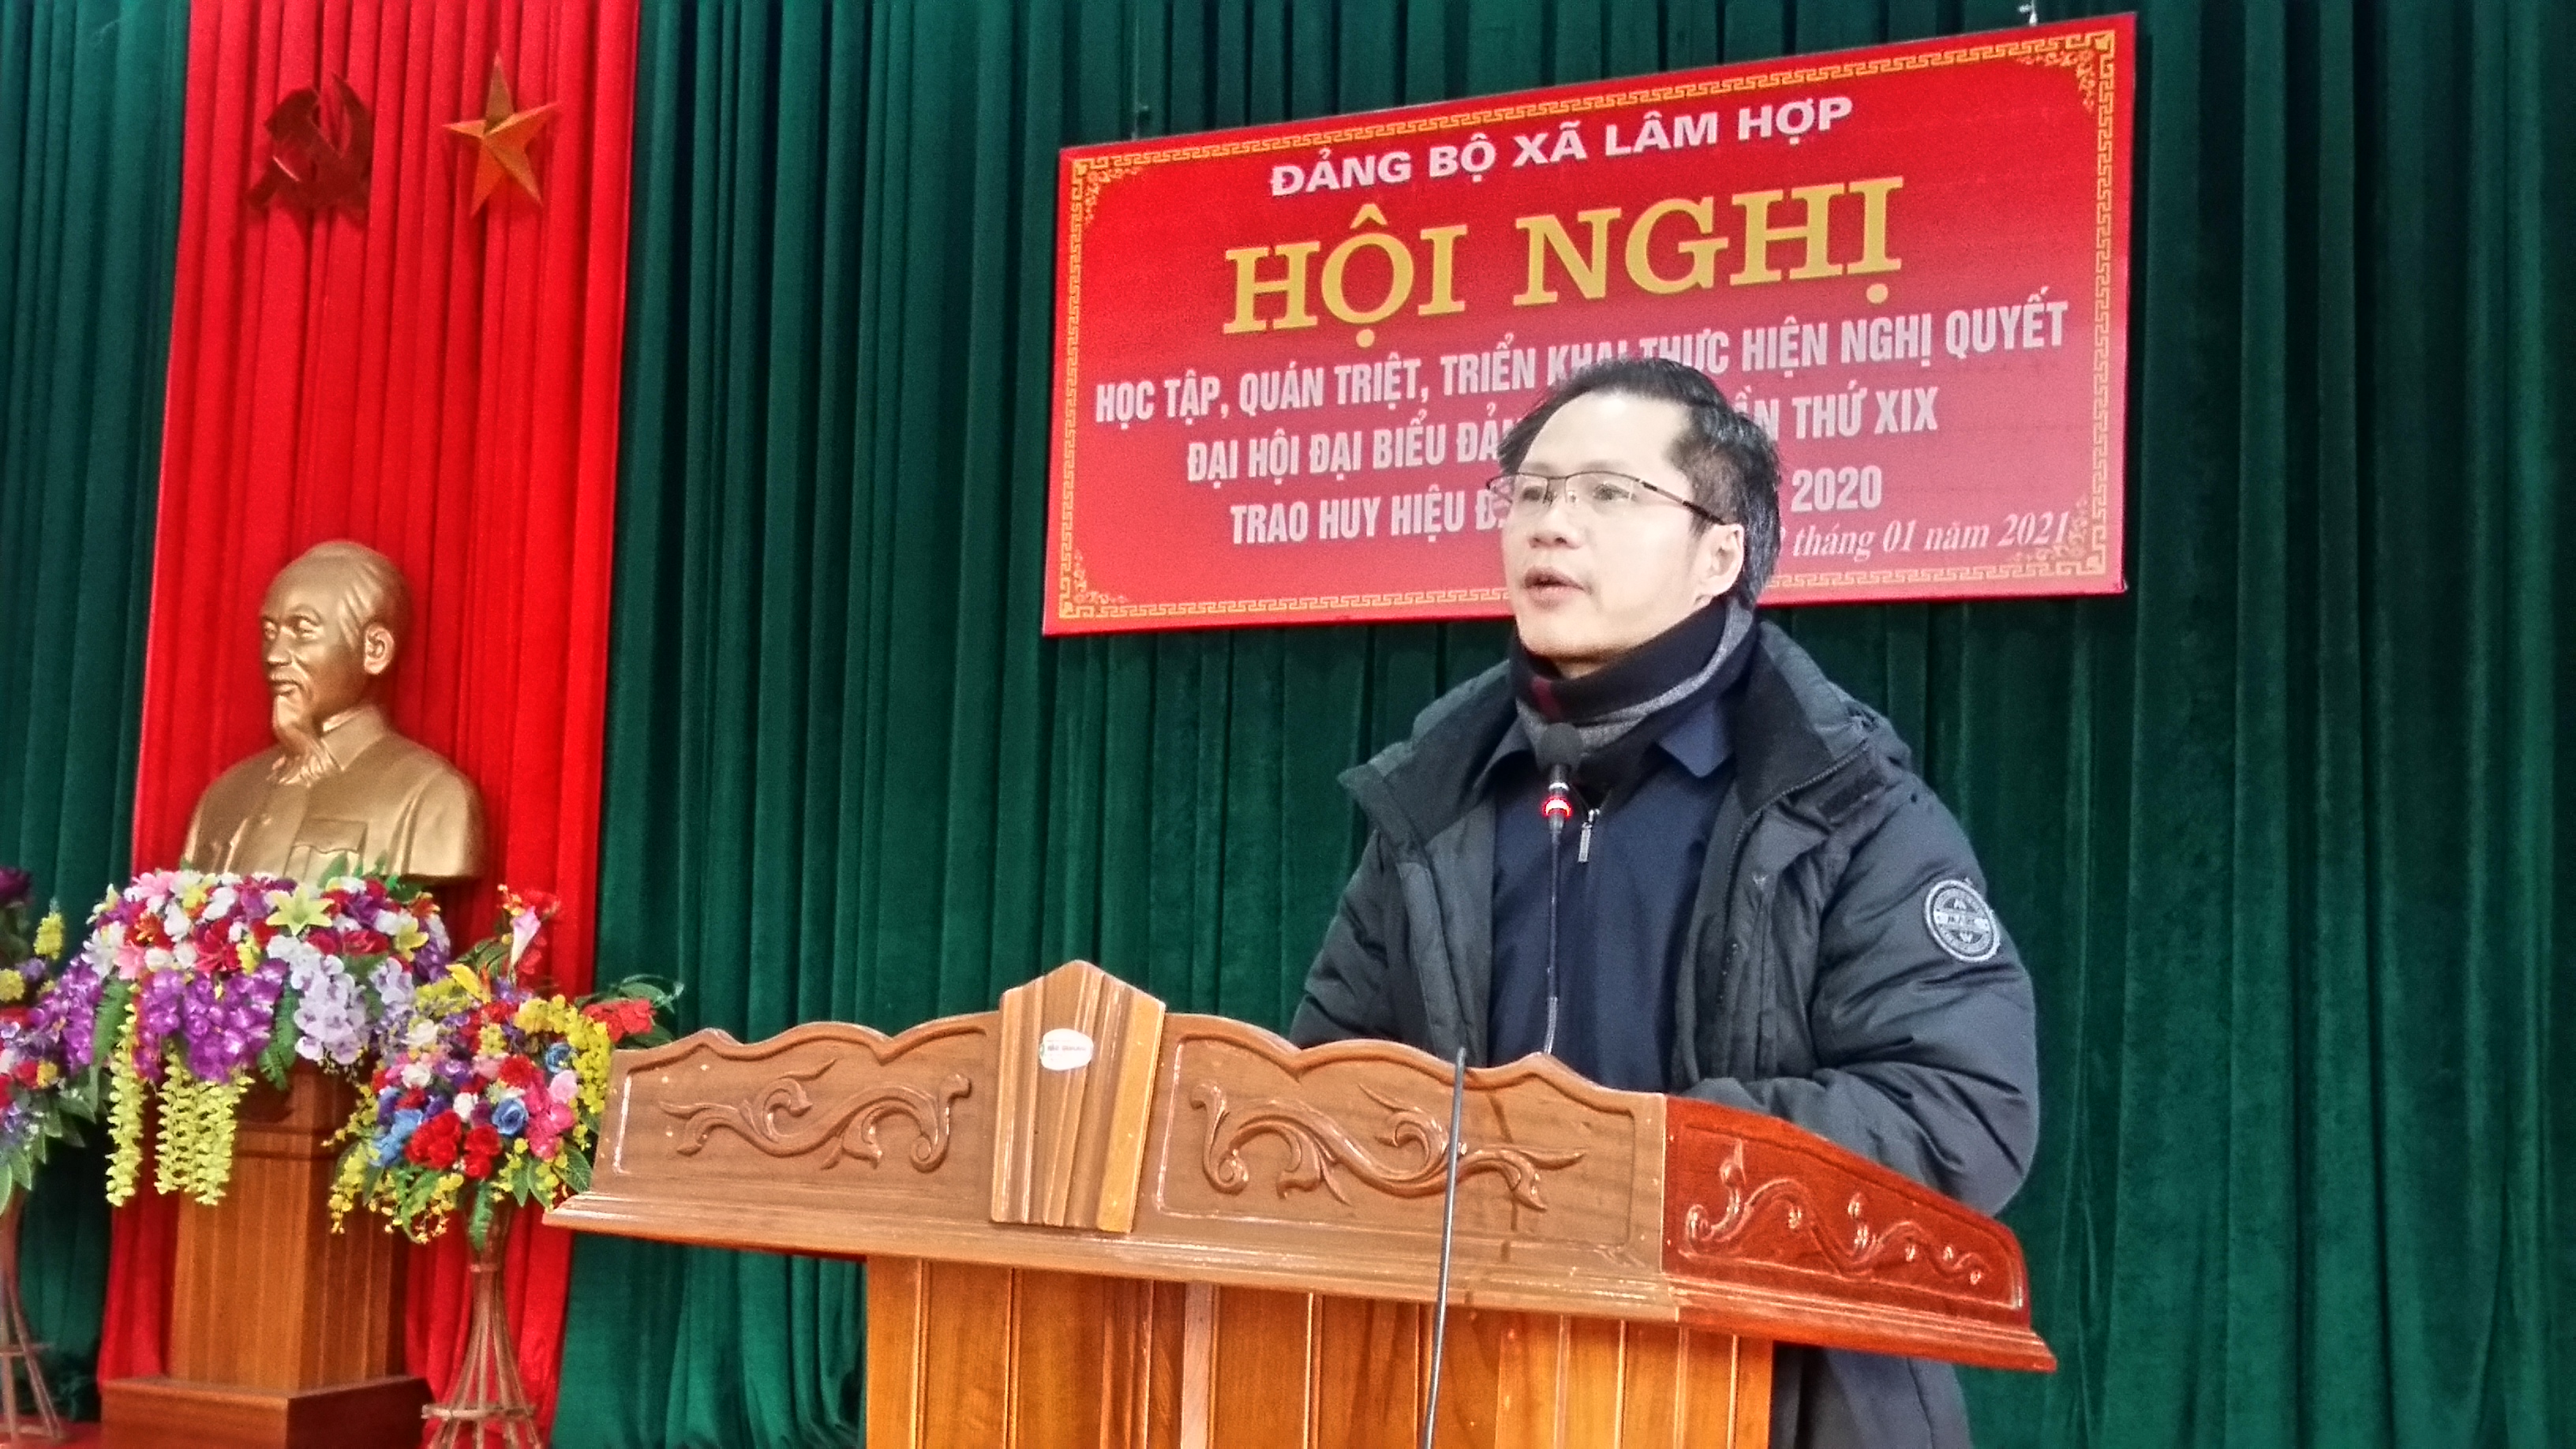 Xã Lâm Hợp tổ chức Hội nghị học tập, quán triệt, triển khai thực hiện Nghị quyết Đại hội Đảng bộ tỉnh Hà Tĩnh lần thứ XIX; Trao huy hiệu 55 tuổi Đảng